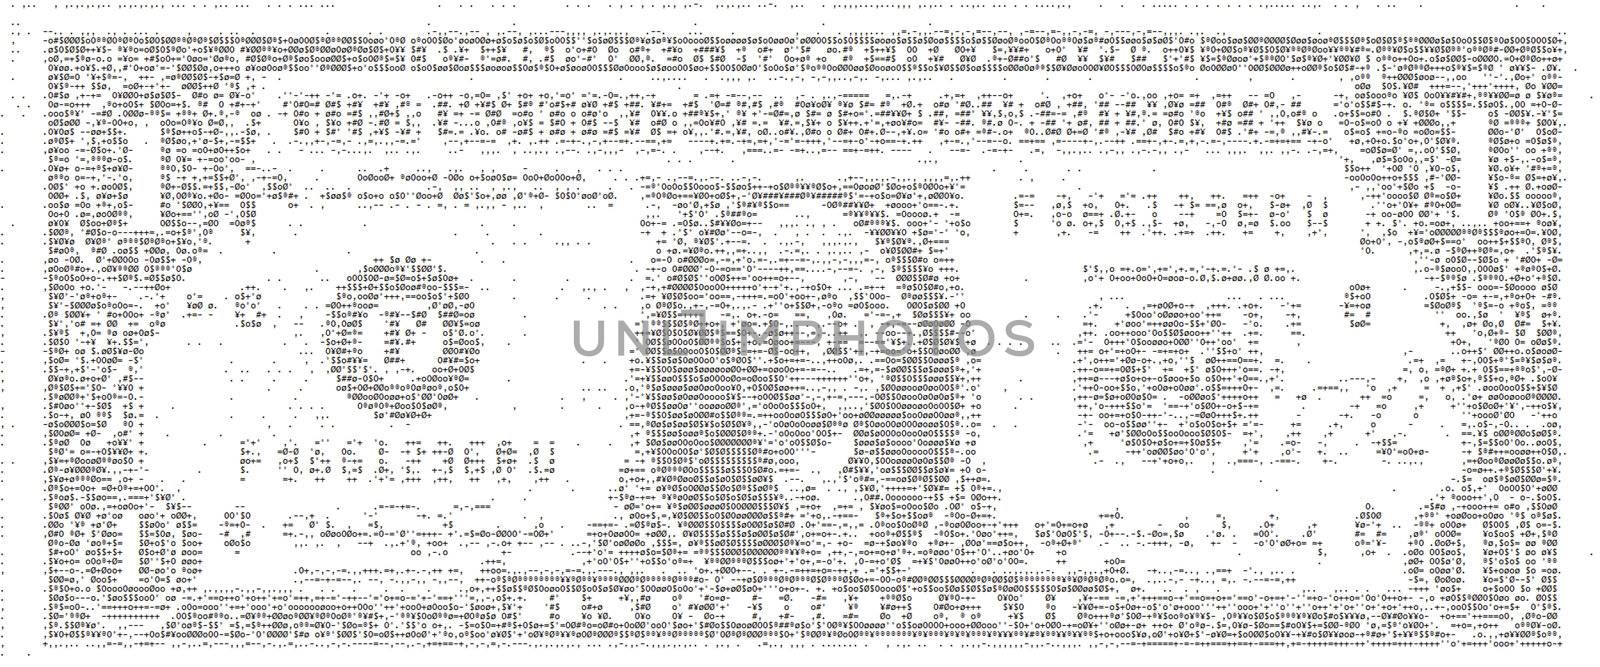 Dollar Bill in ASCII Art